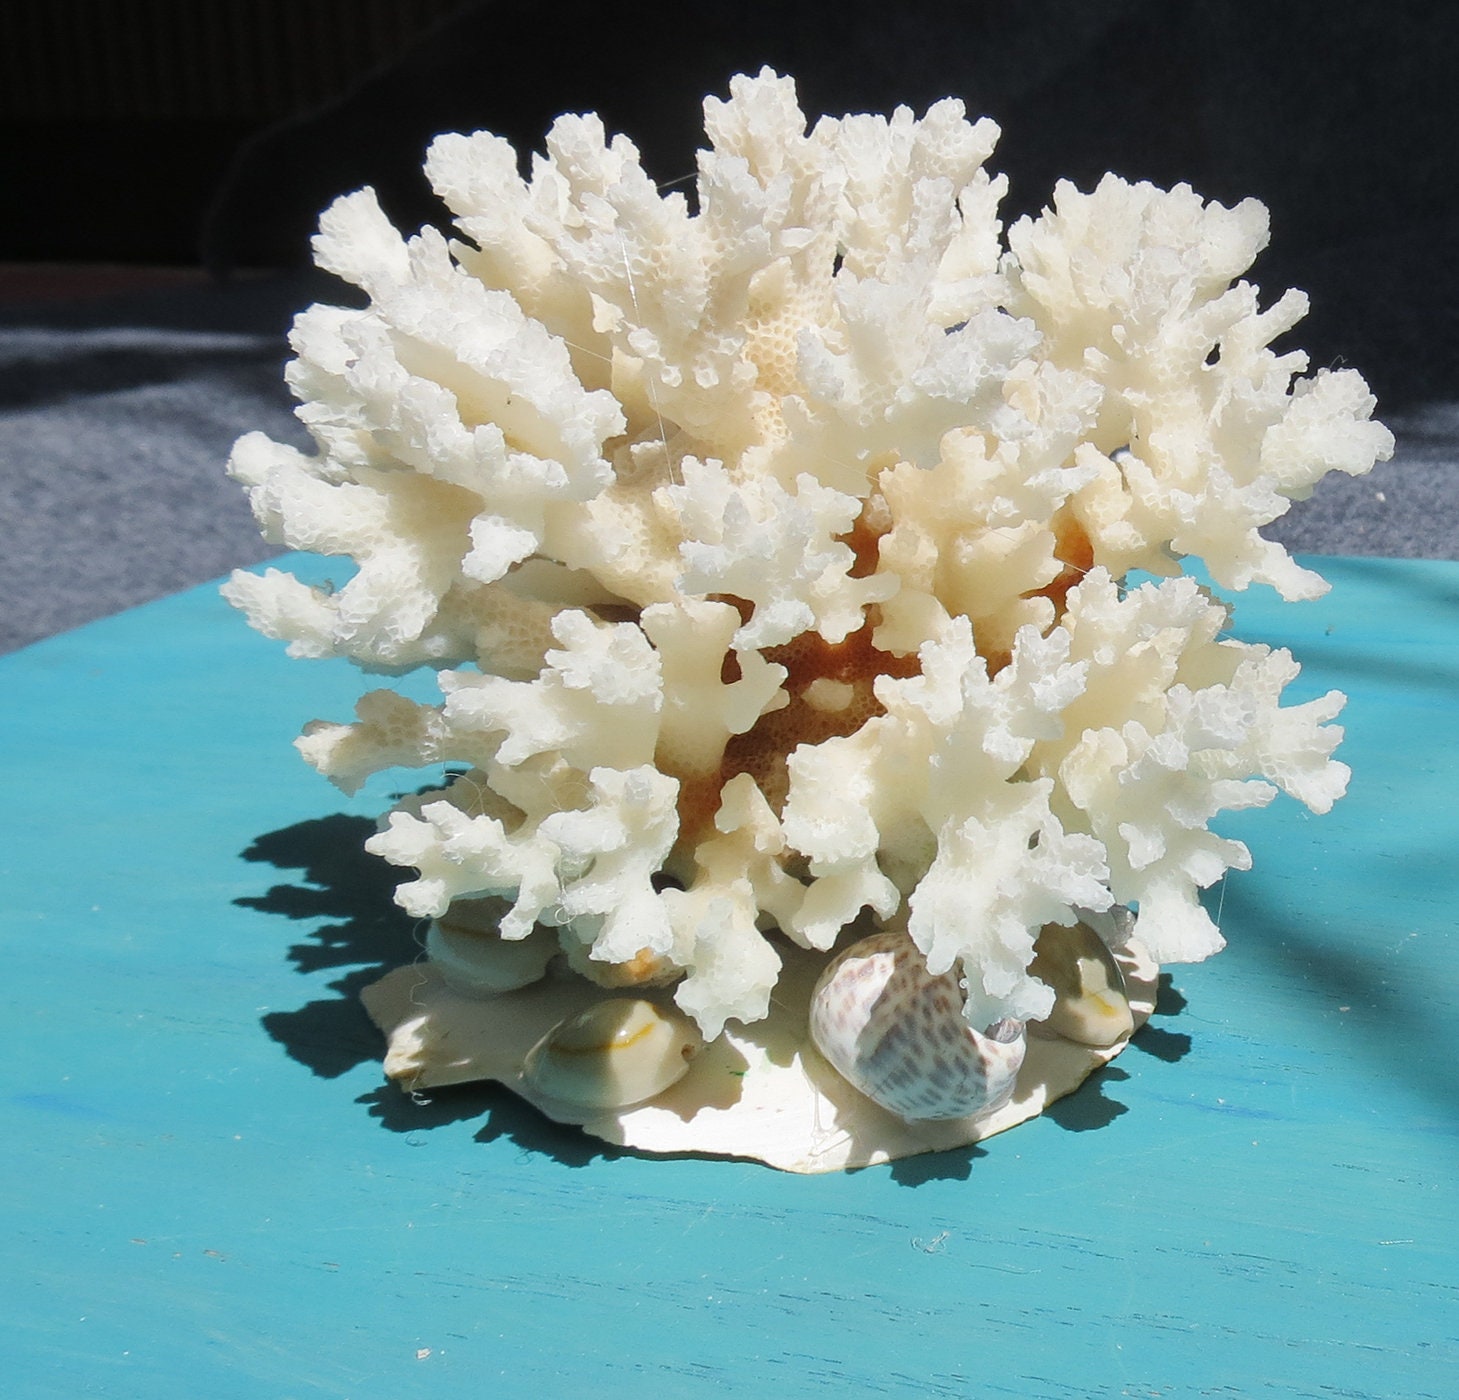 White Coral Décor - Beach Home Décor - Faux Coral Reef Décor 6.5” x 5” x  5.5” - Resin Coral Décor - White Coral Decoration - Coral Branch Décor 